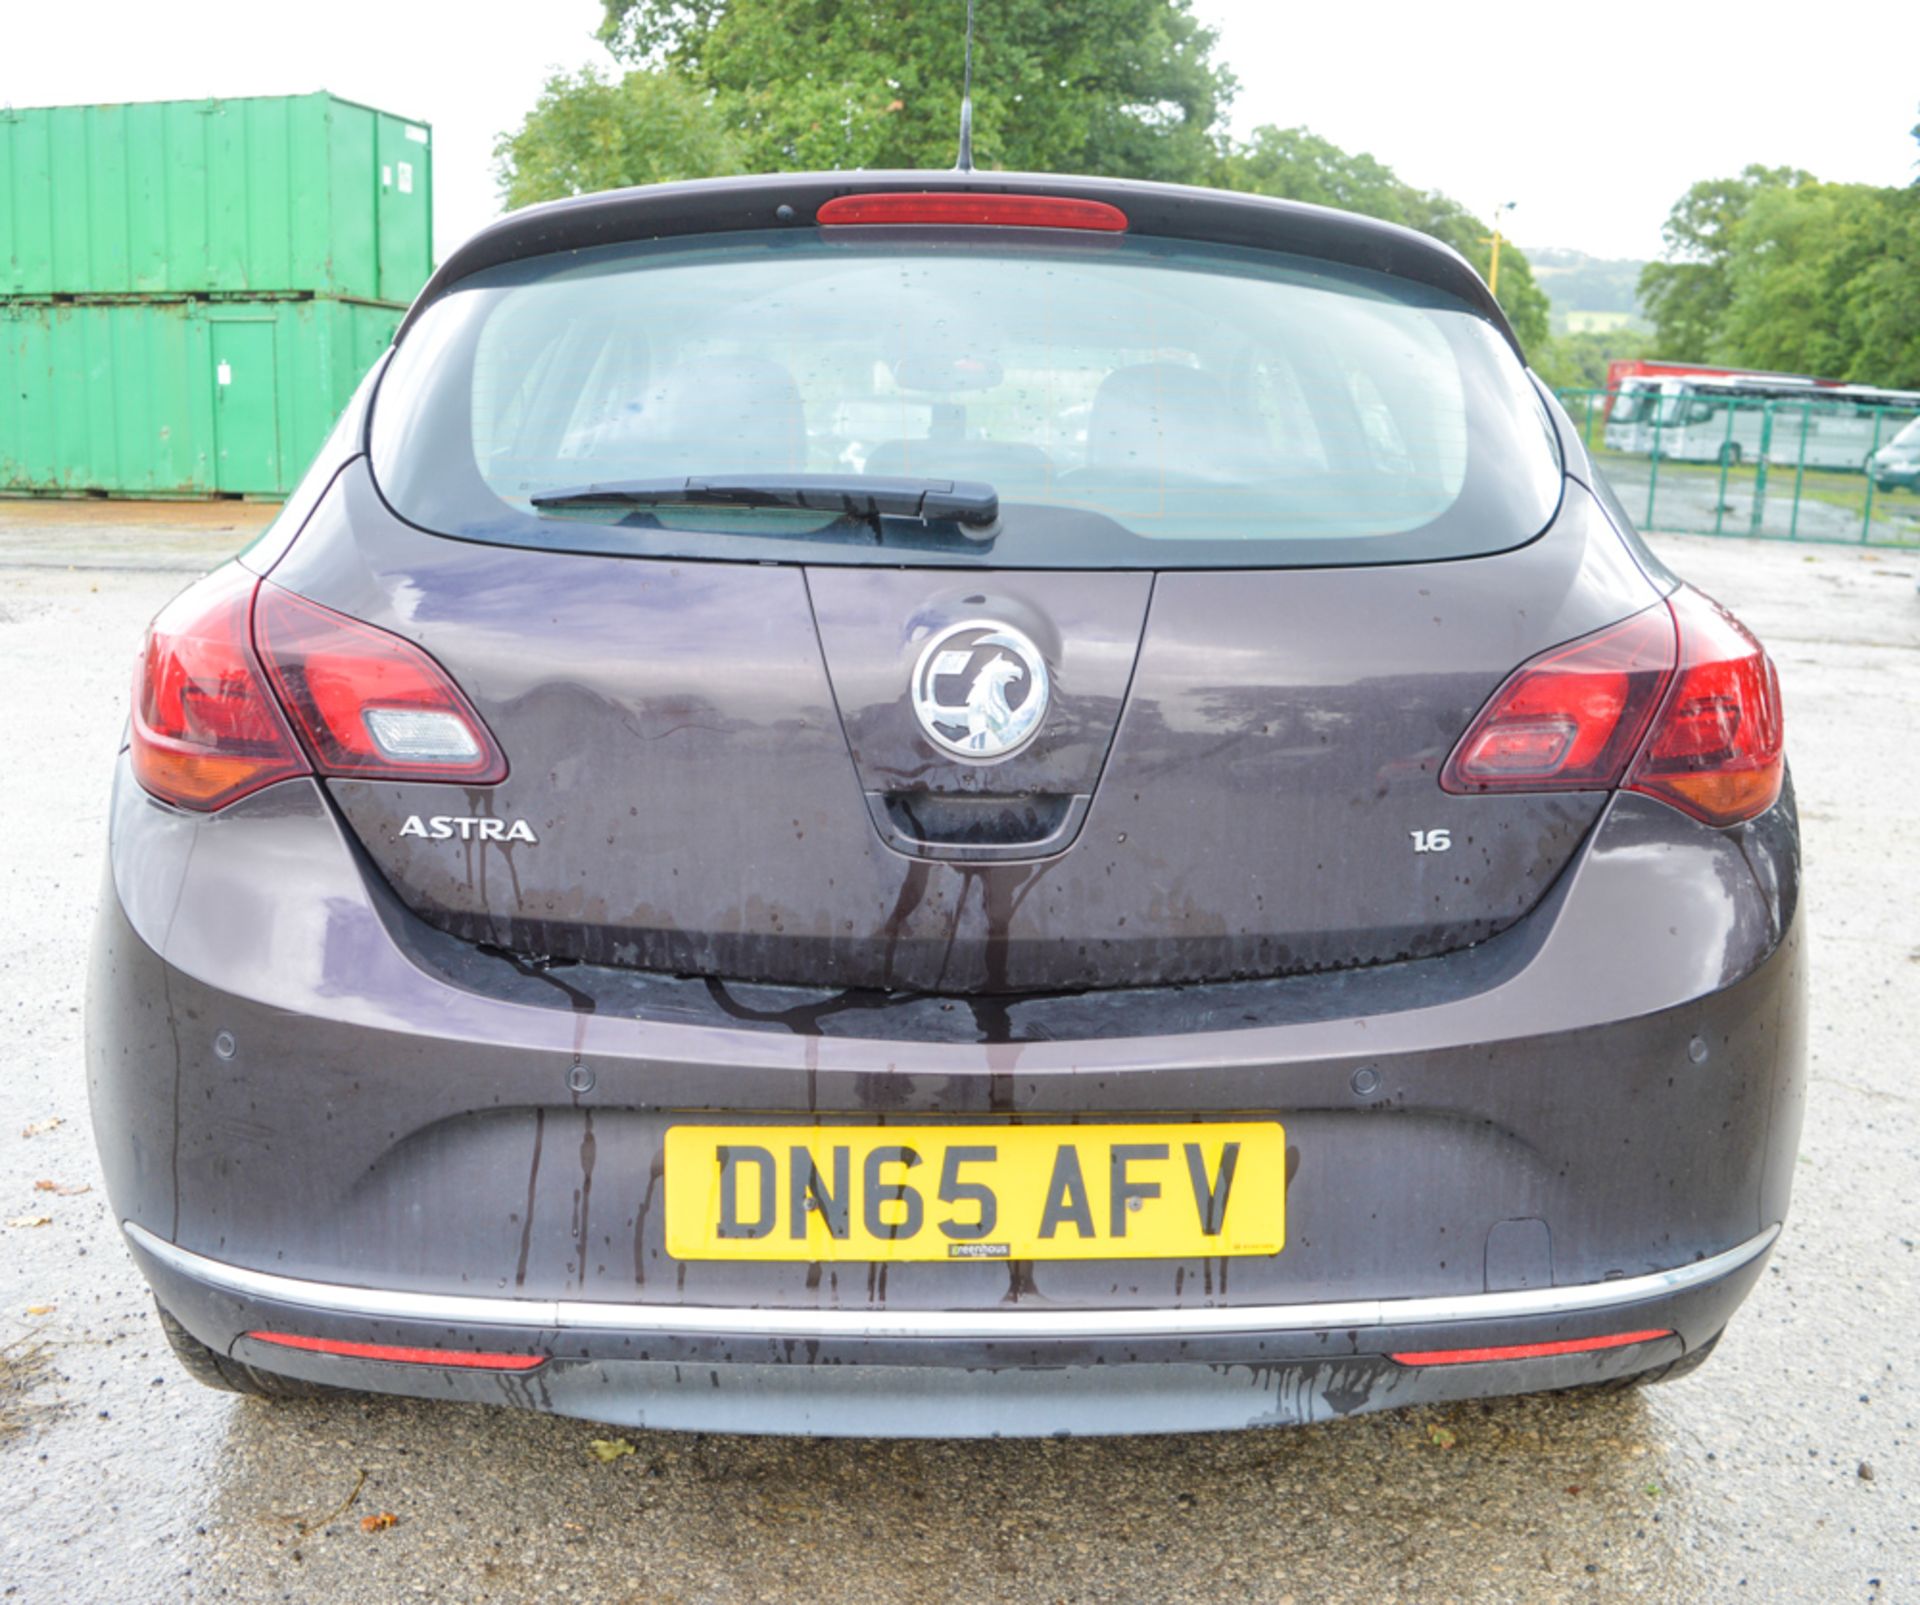 Vauxhall Astra 1.6 i VVT 16v Elite 5dr Hatchback Registration number: DN65 AFV Date of registration: - Image 7 of 10